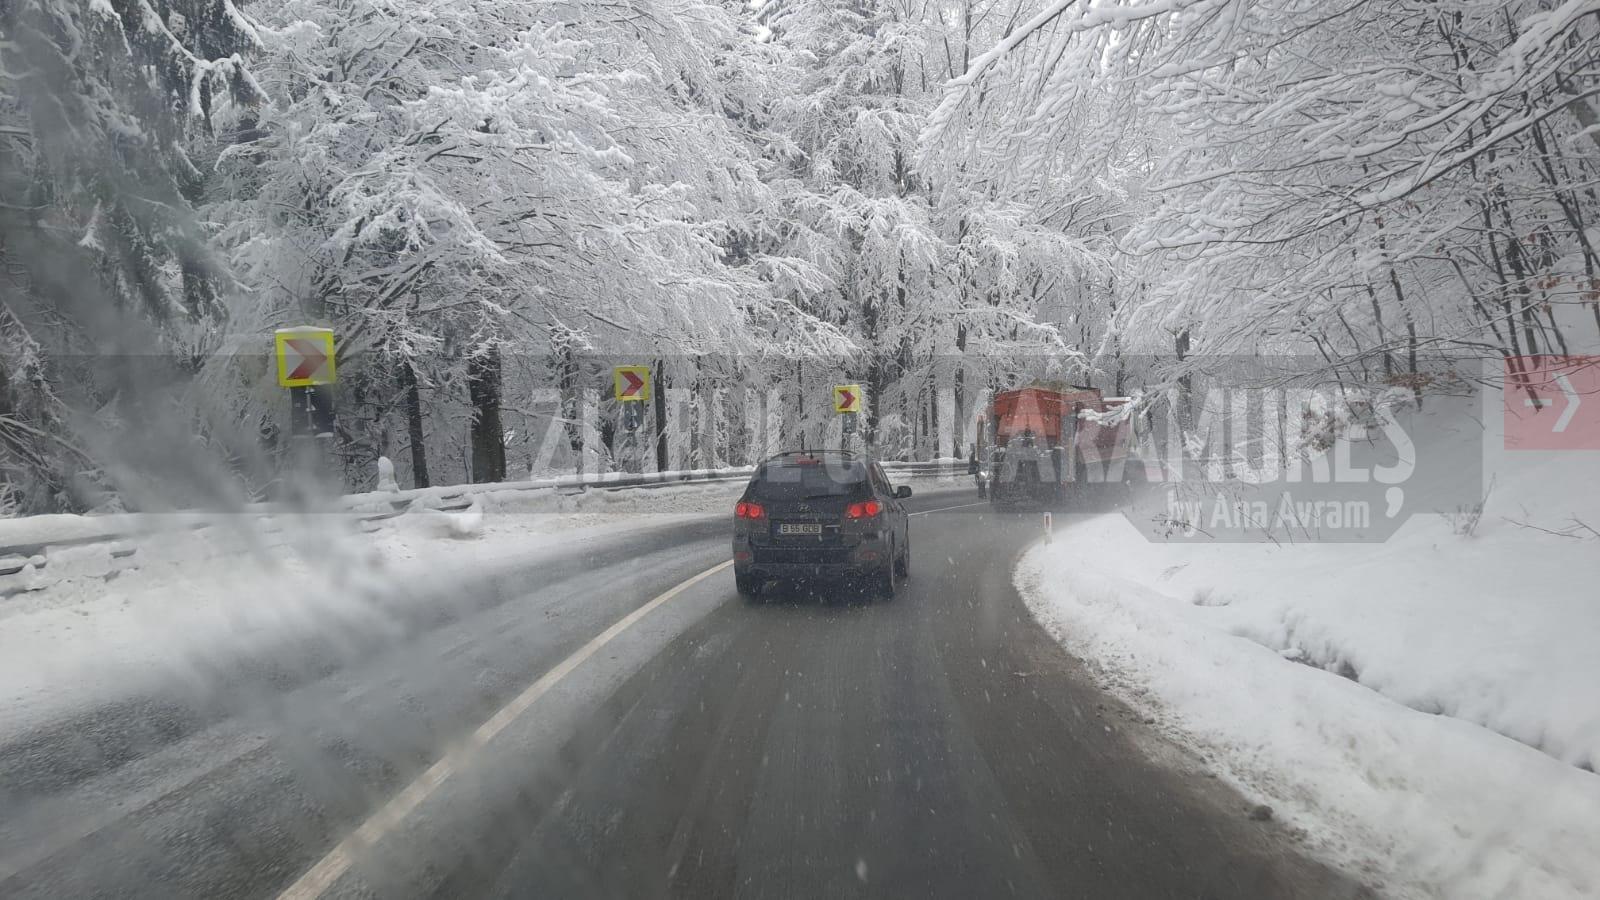 Info trafic: În pasul Prislop, zăpadă frământată pe carosabil. Minima zilei este de -7 grade C